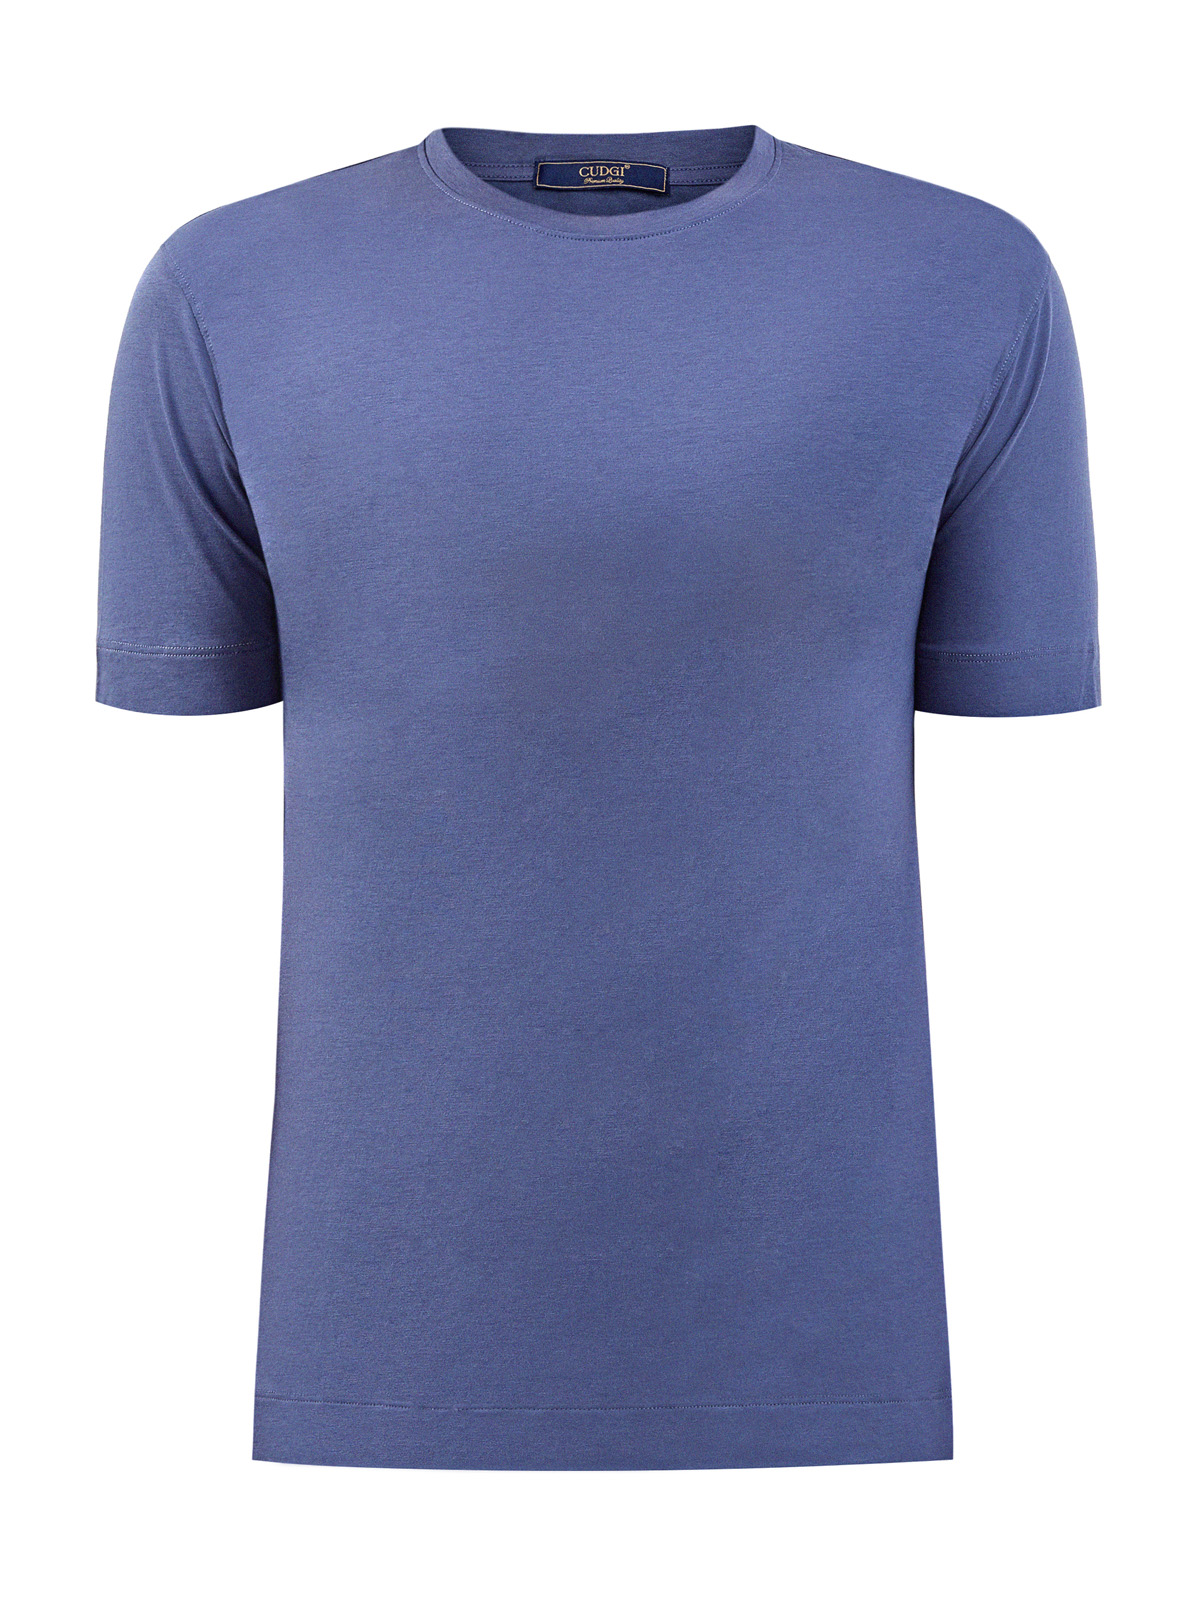 Однотонная футболка из джерси на основе хлопка и лиоцелла CUDGI, цвет синий, размер L;XL;2XL;3XL;M - фото 1